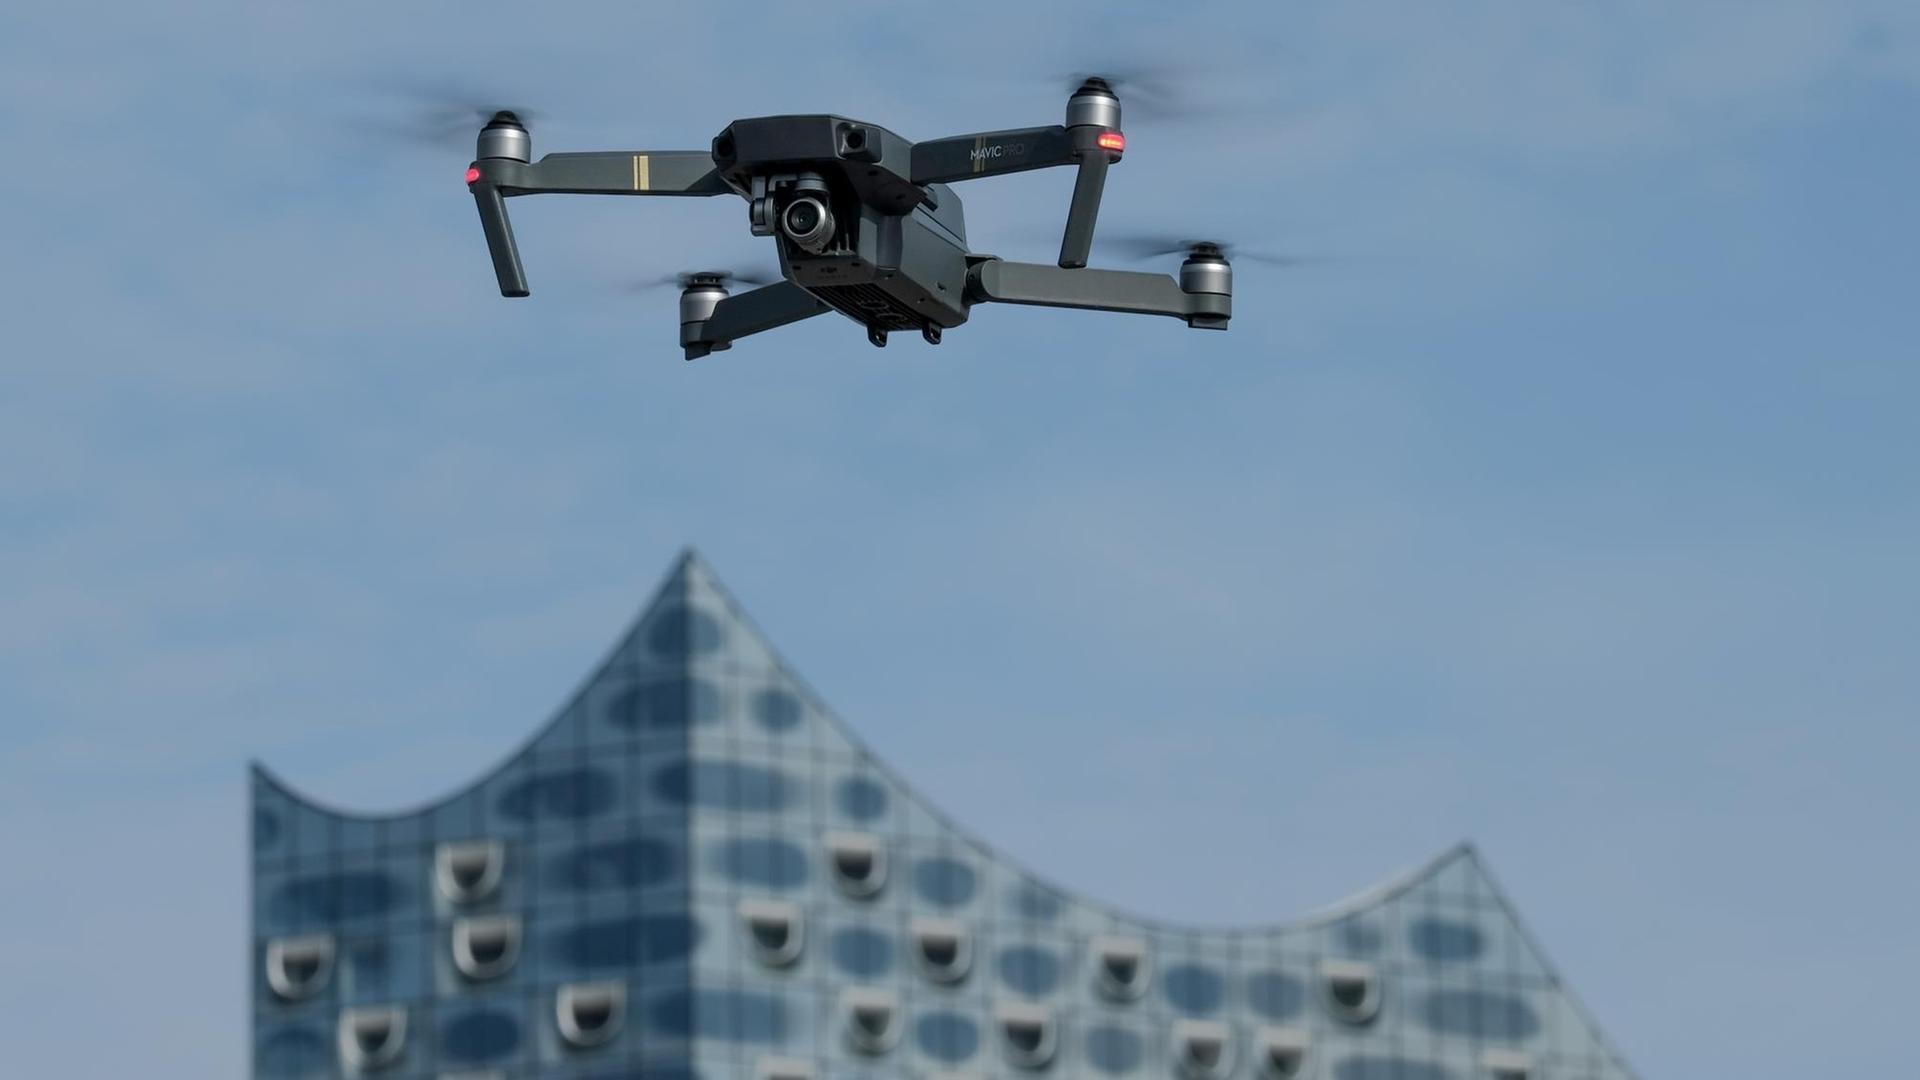 Eine Drohne (Typ Quadrocopter), die mit einer Foto/Videokamera ausgestattet ist, schwebt am 12.03.2017 in Hamburg in der Nähe der Elbphilharmonie am Himmel. Die Nutzung von Drohnen, sogenannten unbemannten Luftfahrtsystemen (UAS), ist im Luftverkehrsgesetz geregelt.